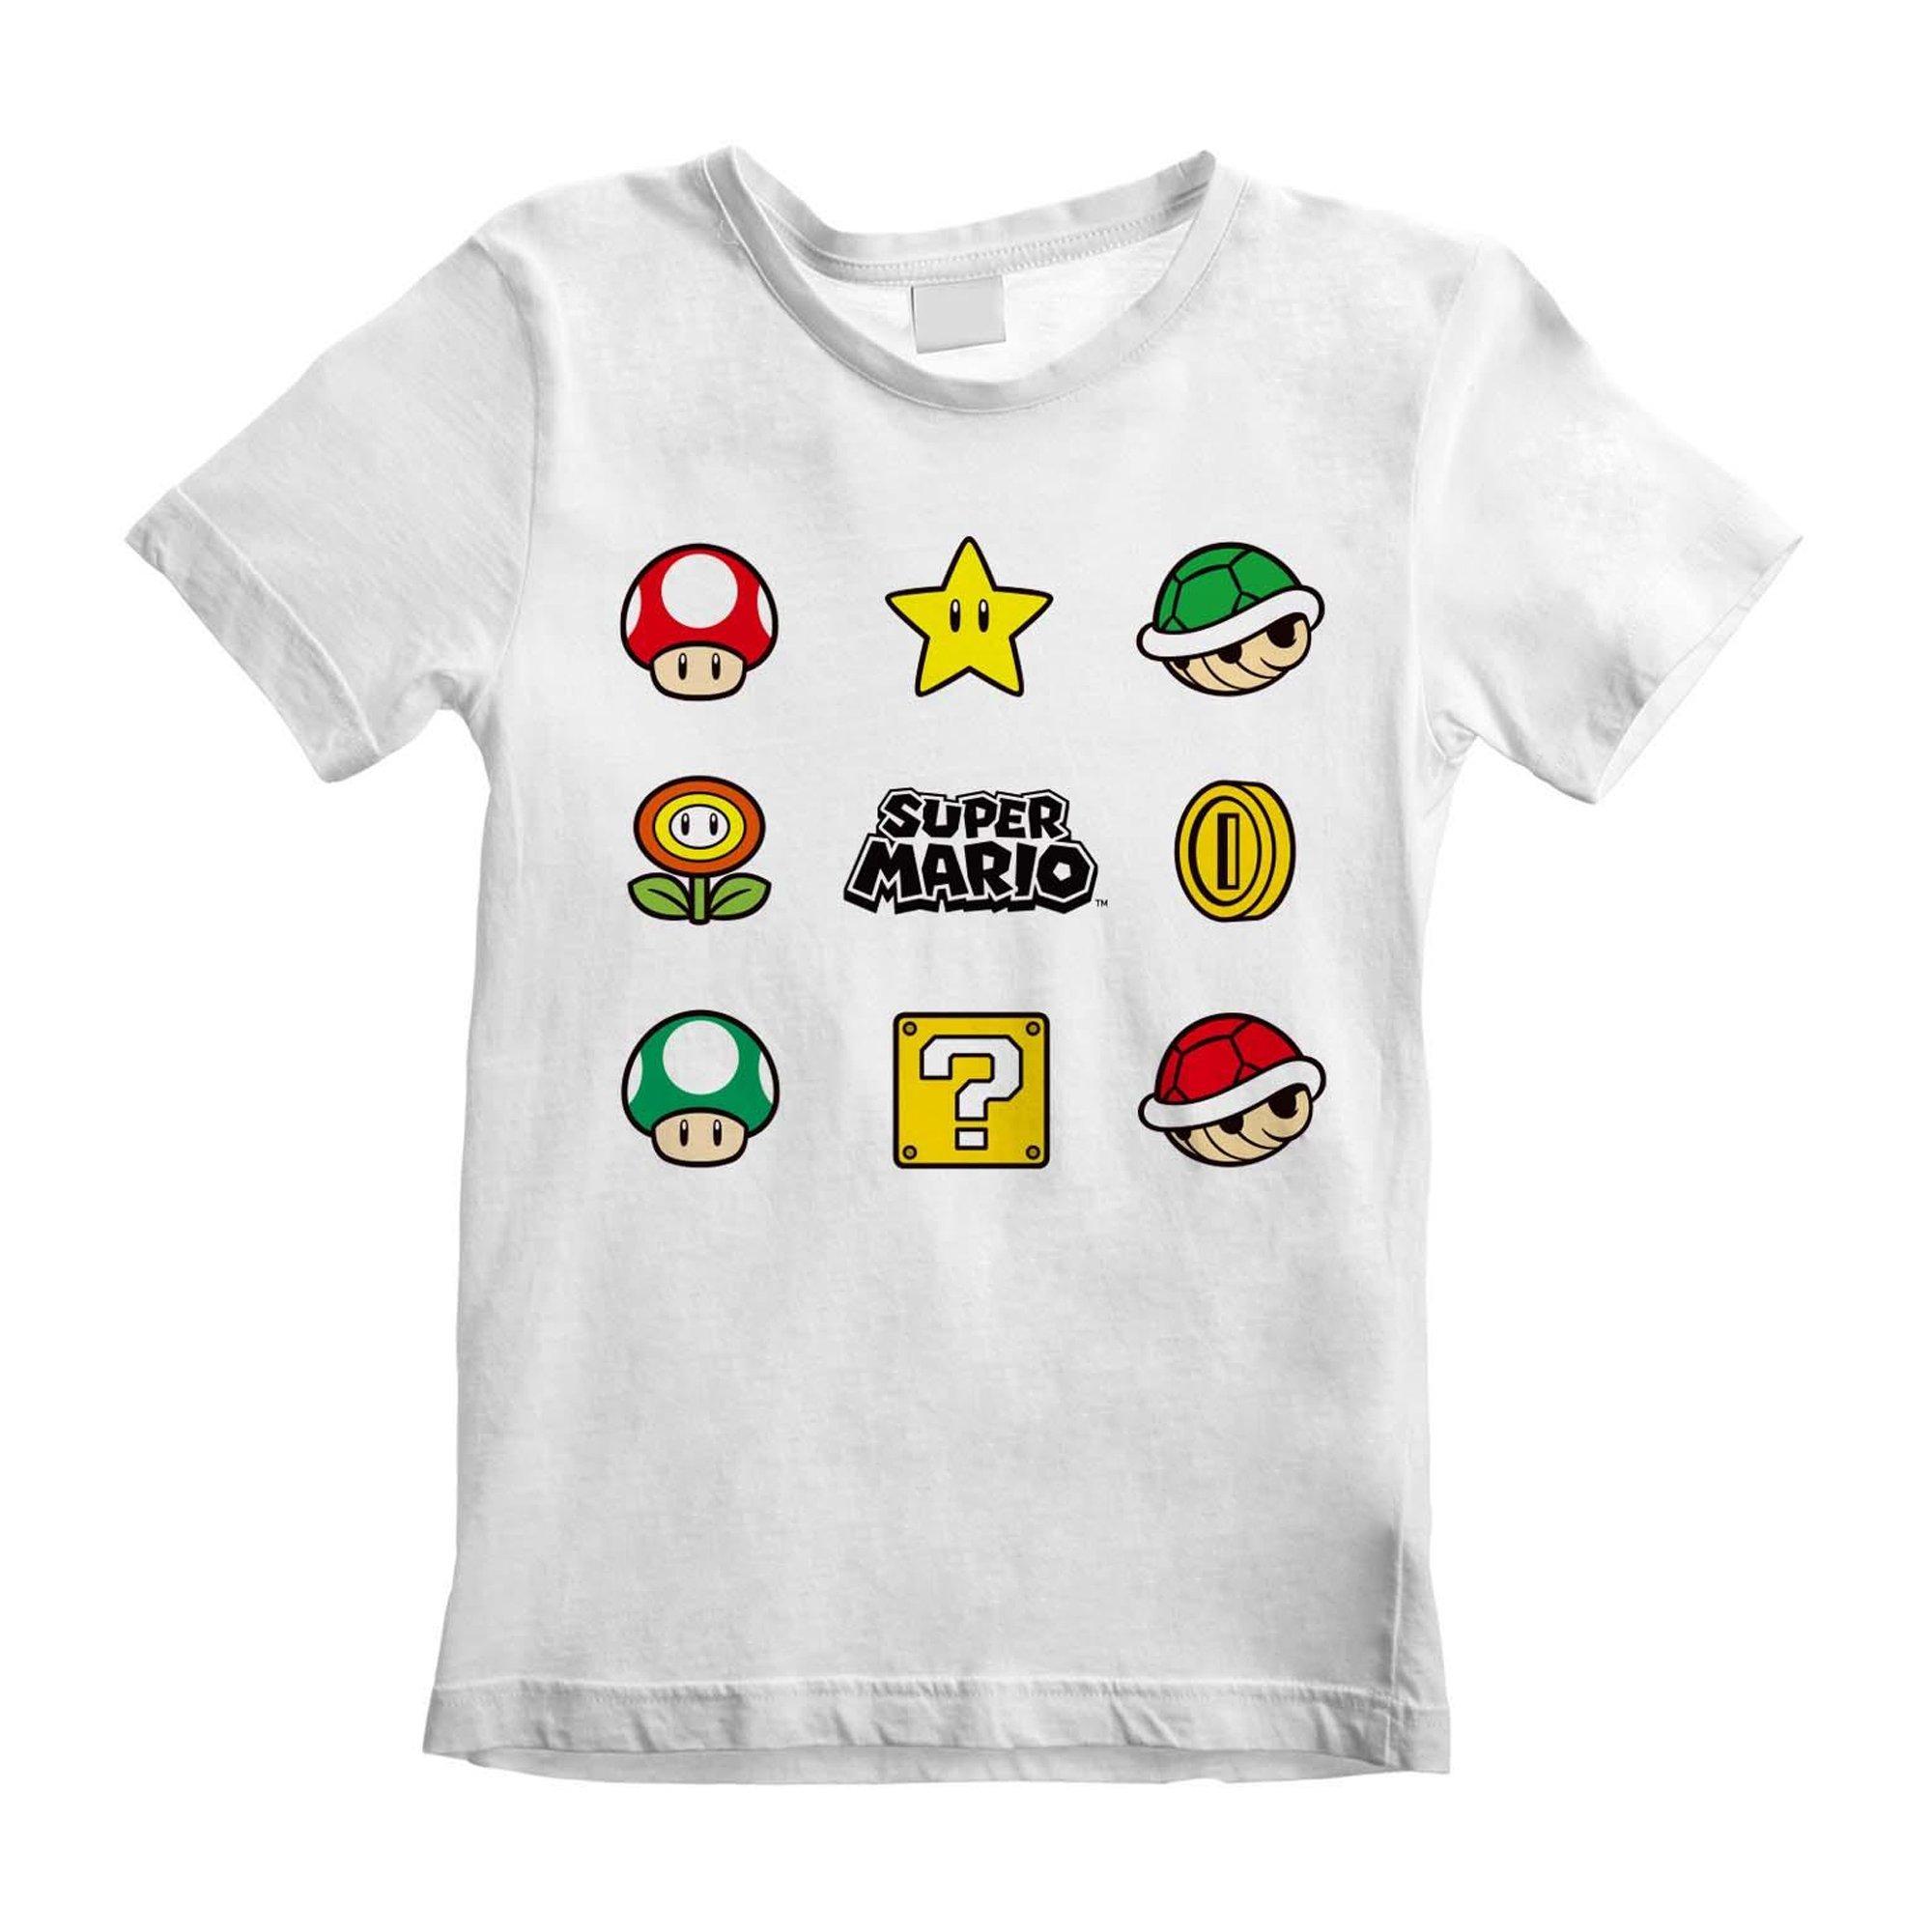 Super Mario  Tshirt ITEMS Enfant 